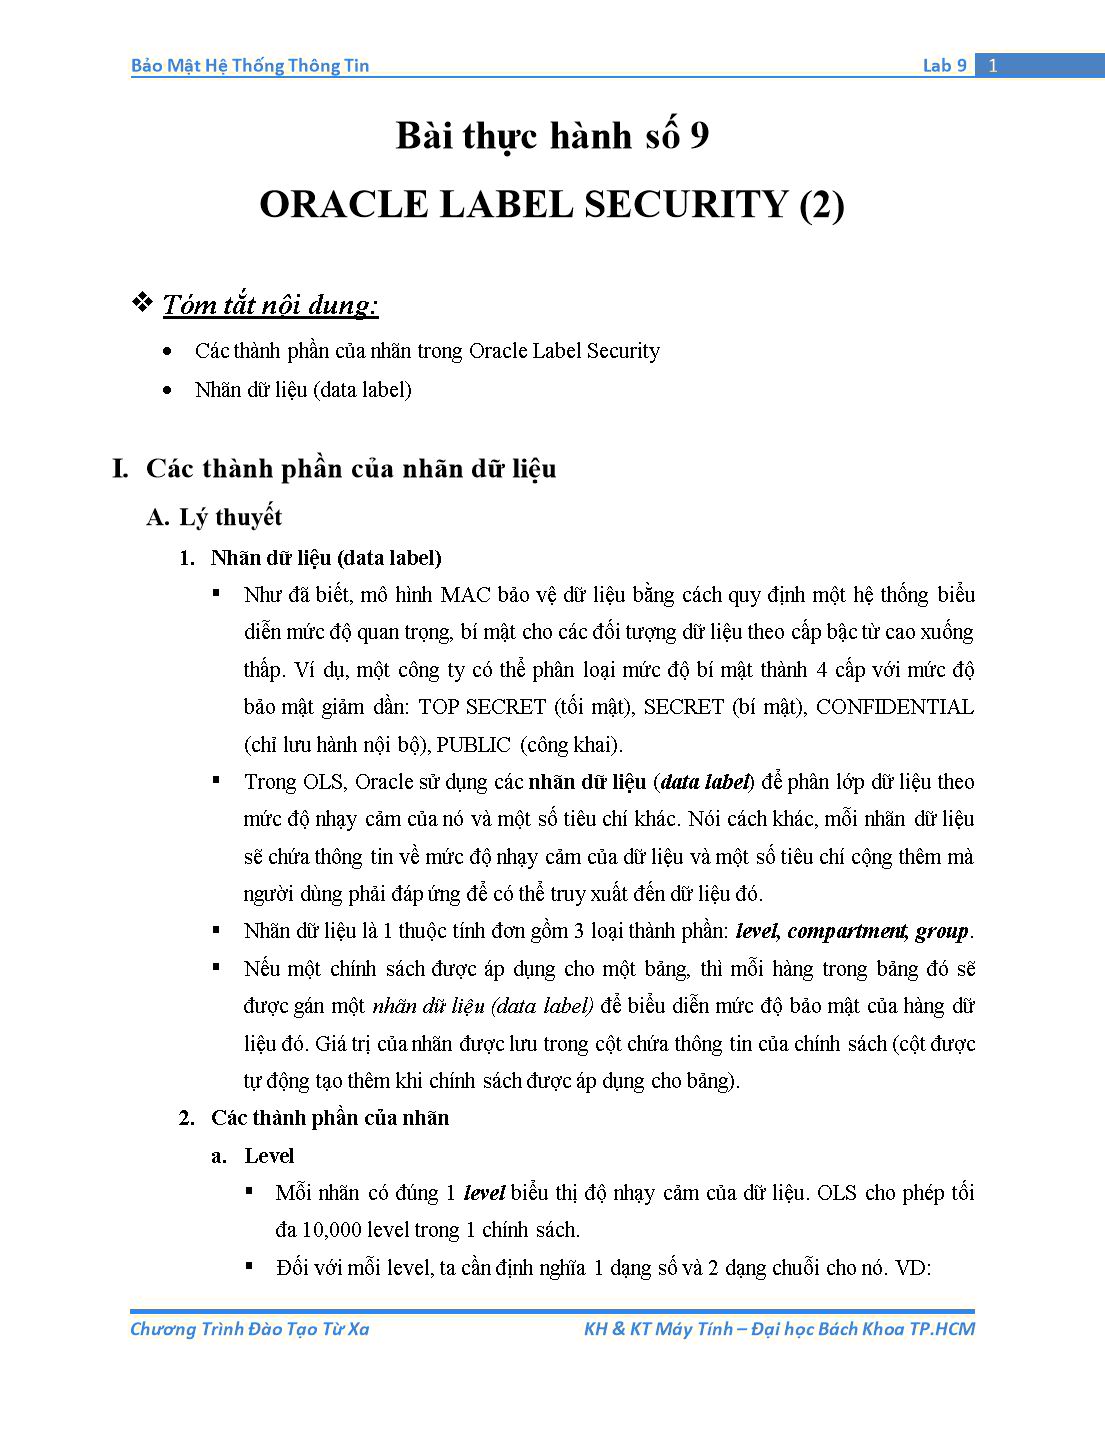 Tài liệu thực hành Bảo mật hệ thống thông tin - Bài thực hành số 9: Oracle Label Security (Phần 2) trang 1